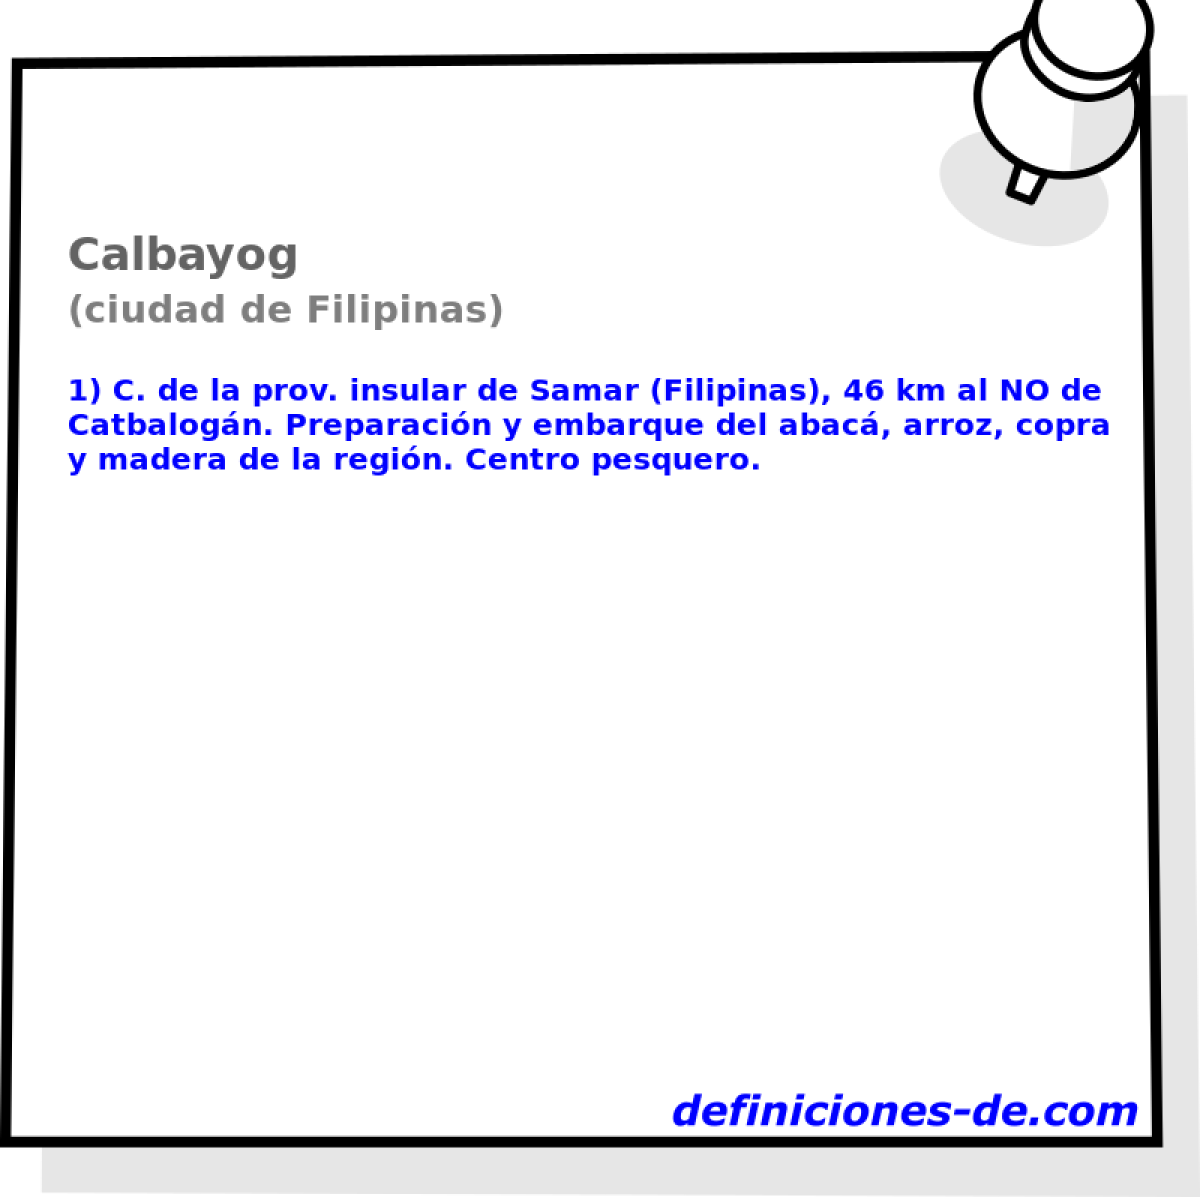 Calbayog (ciudad de Filipinas)